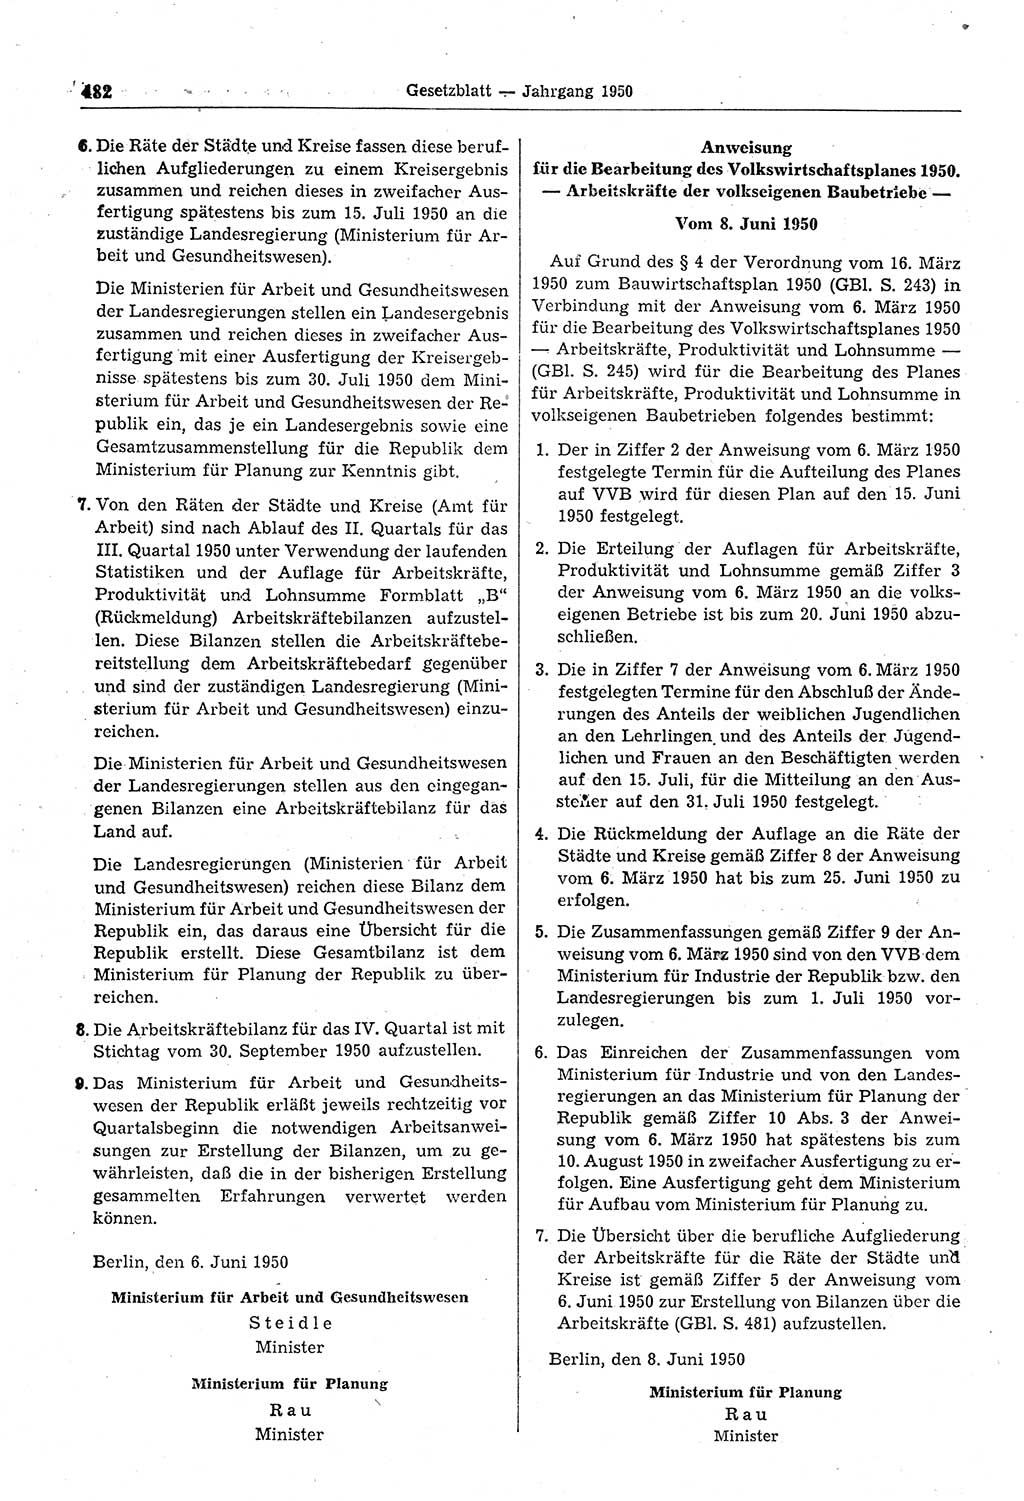 Gesetzblatt (GBl.) der Deutschen Demokratischen Republik (DDR) 1950, Seite 482 (GBl. DDR 1950, S. 482)